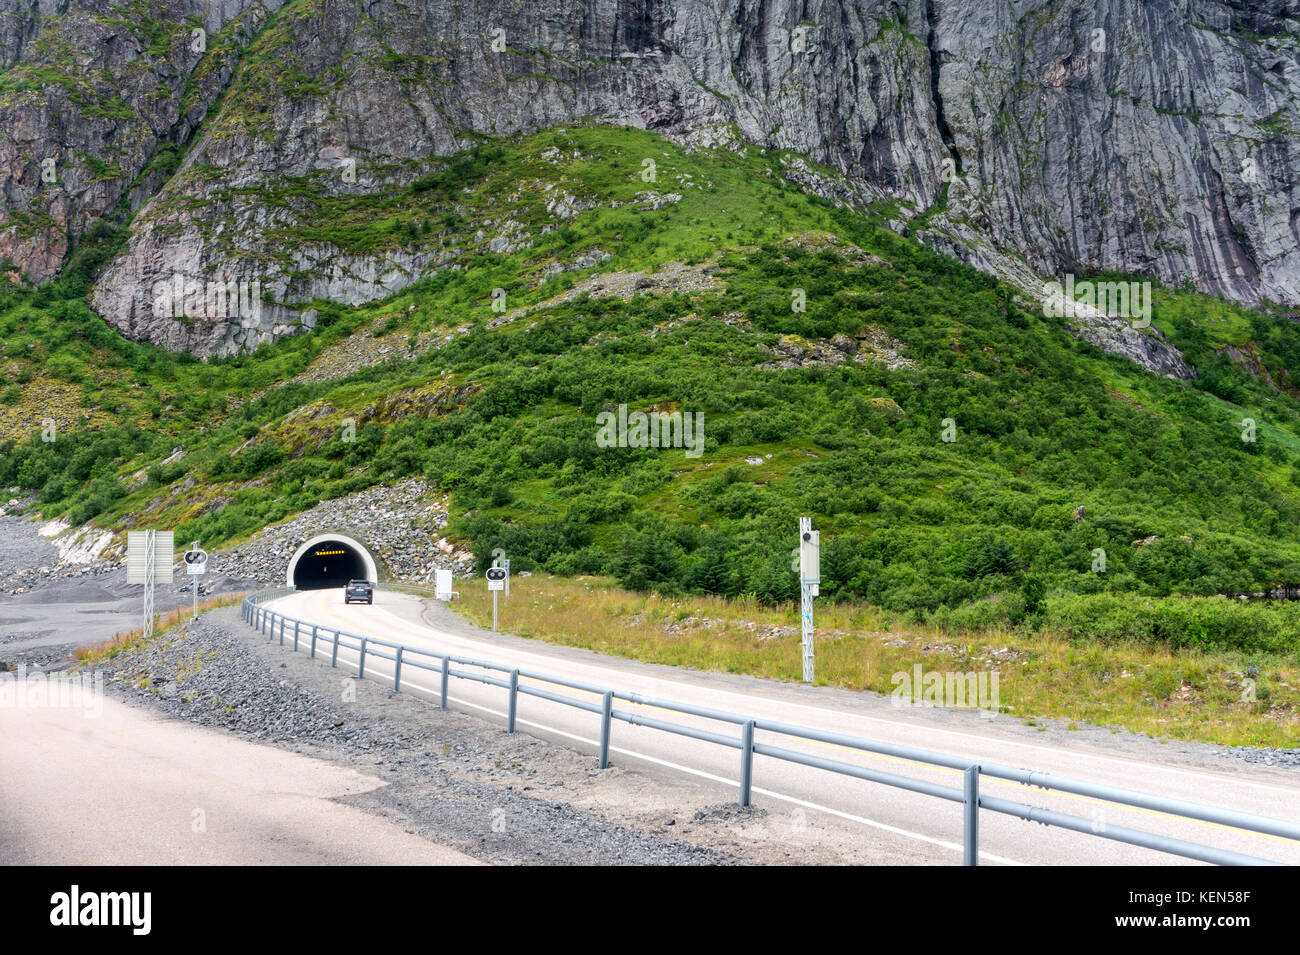 L'ingresso alla Galleria, arcipelago delle Lofoten, nordland county, Norvegia. nazionale percorso turistico lofoten Foto Stock